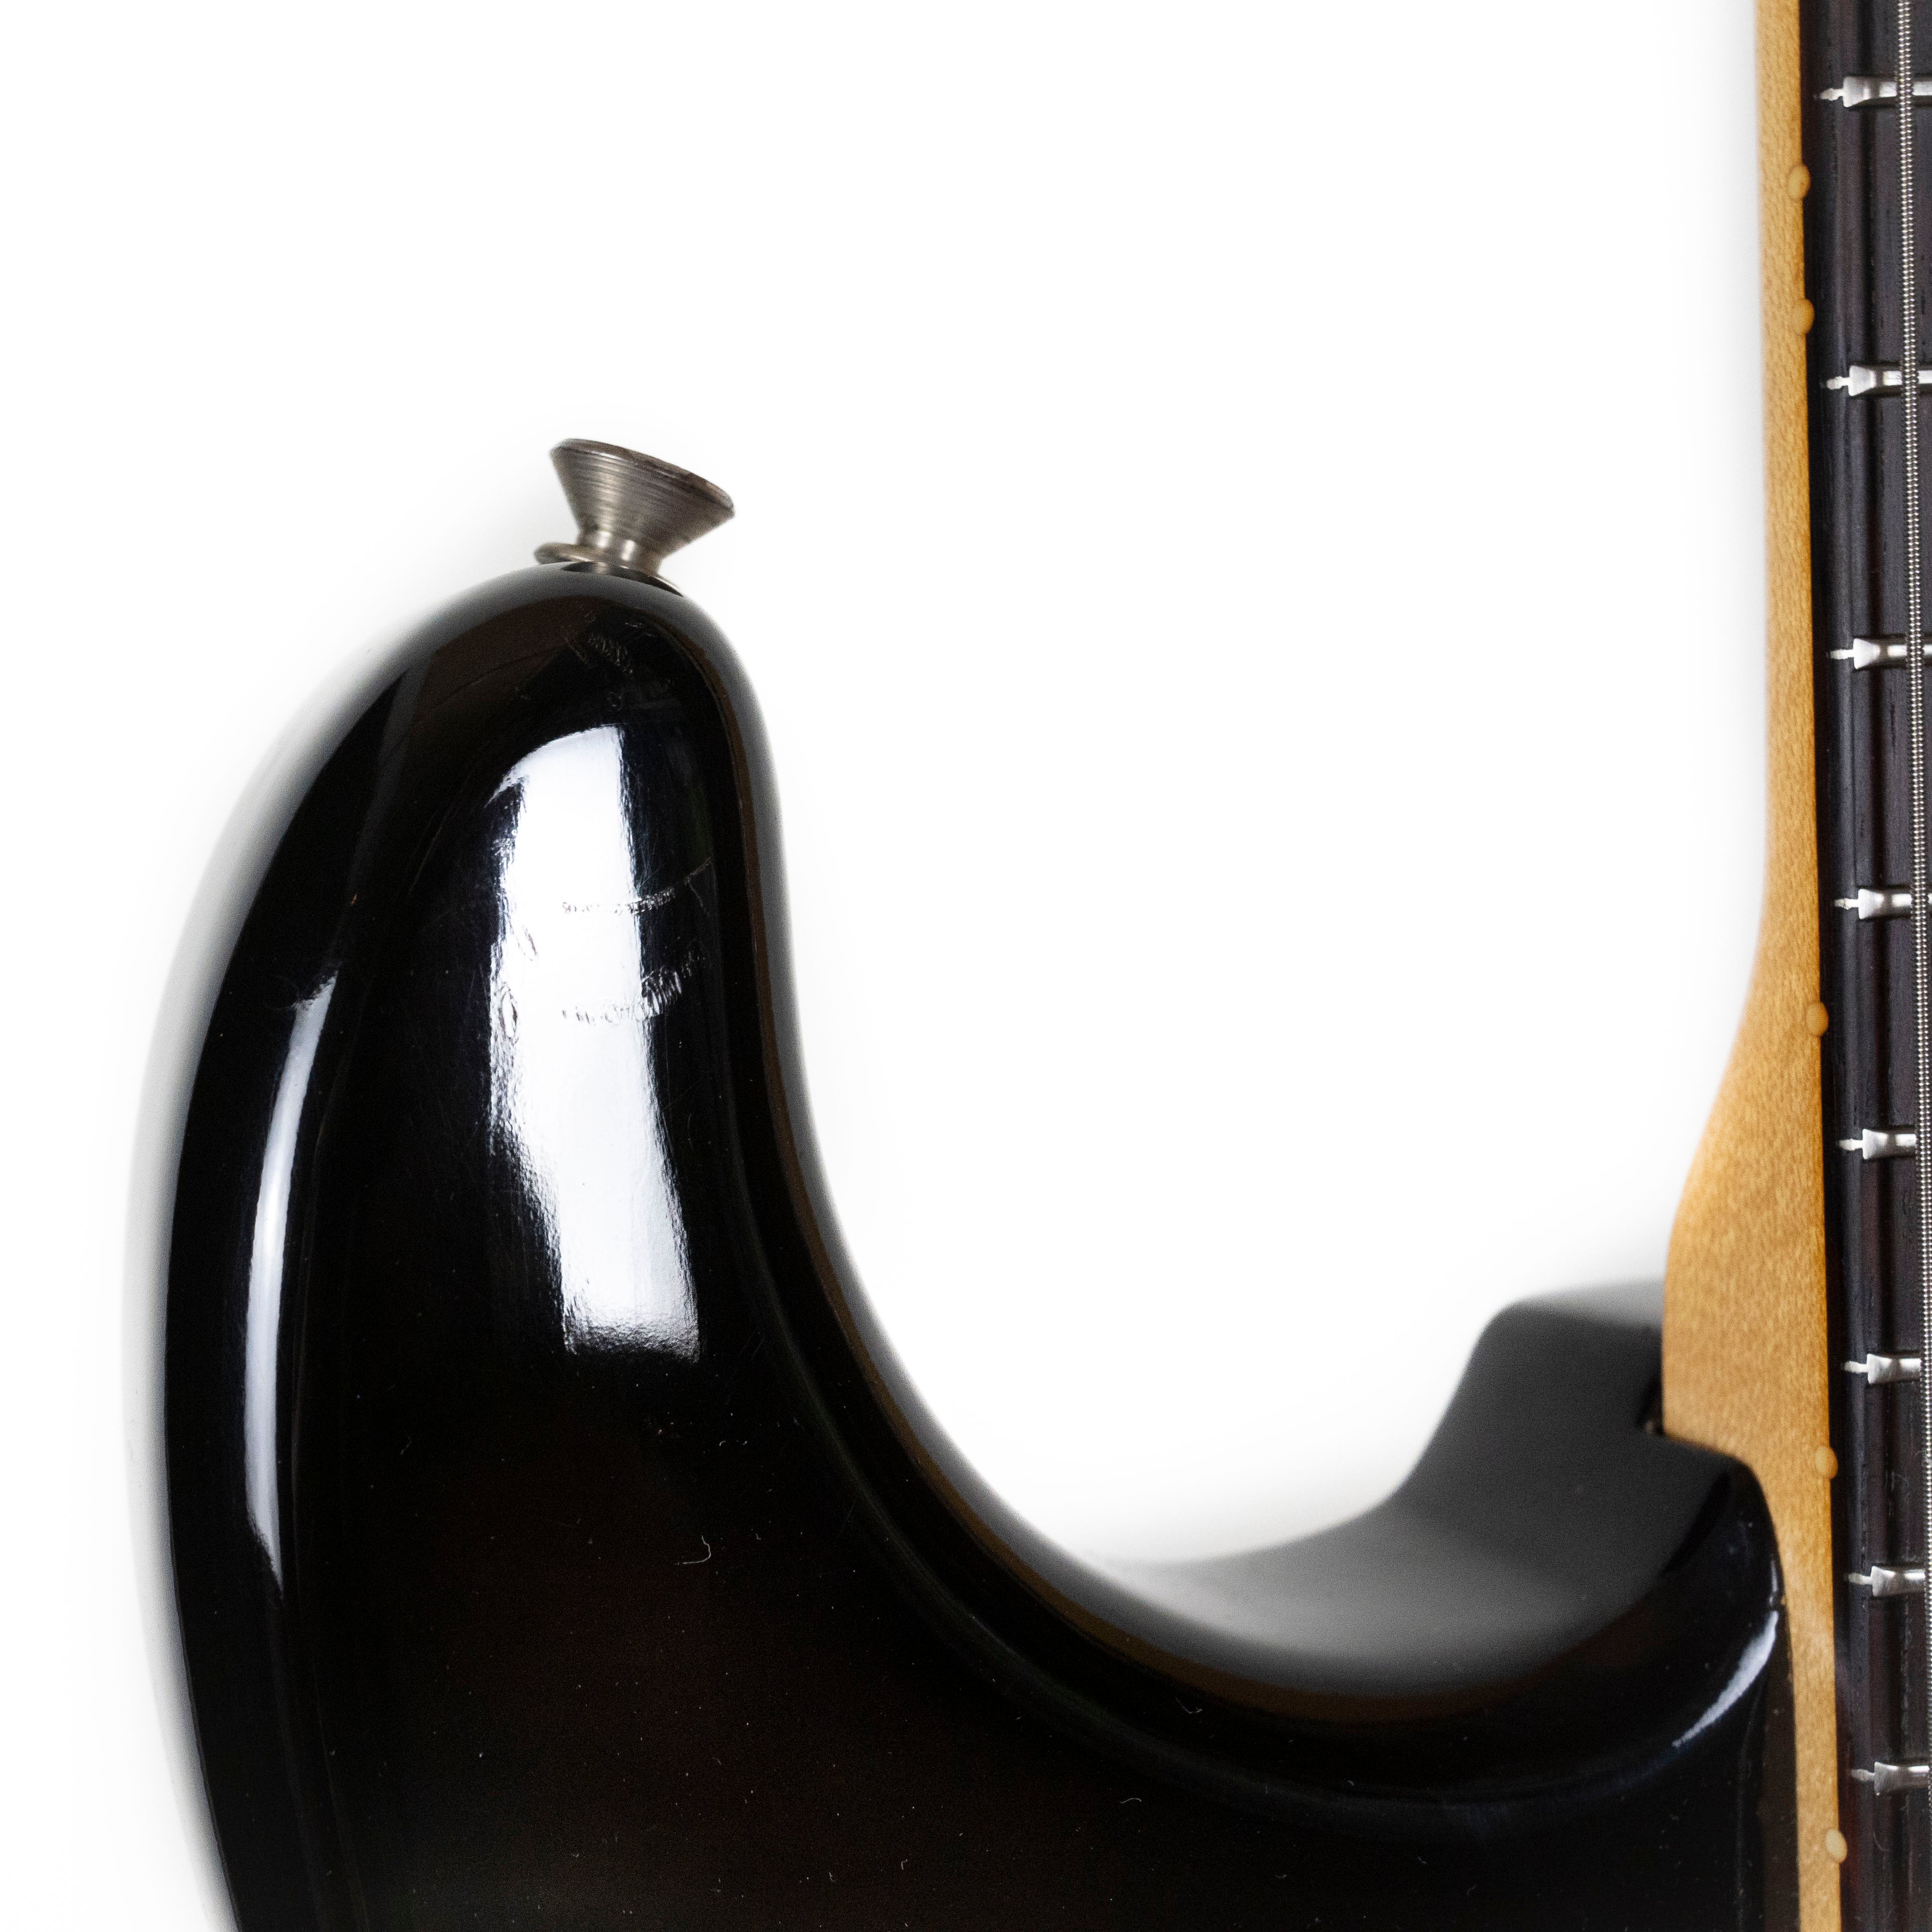 Fender 1961 Stratocaster Sunburst